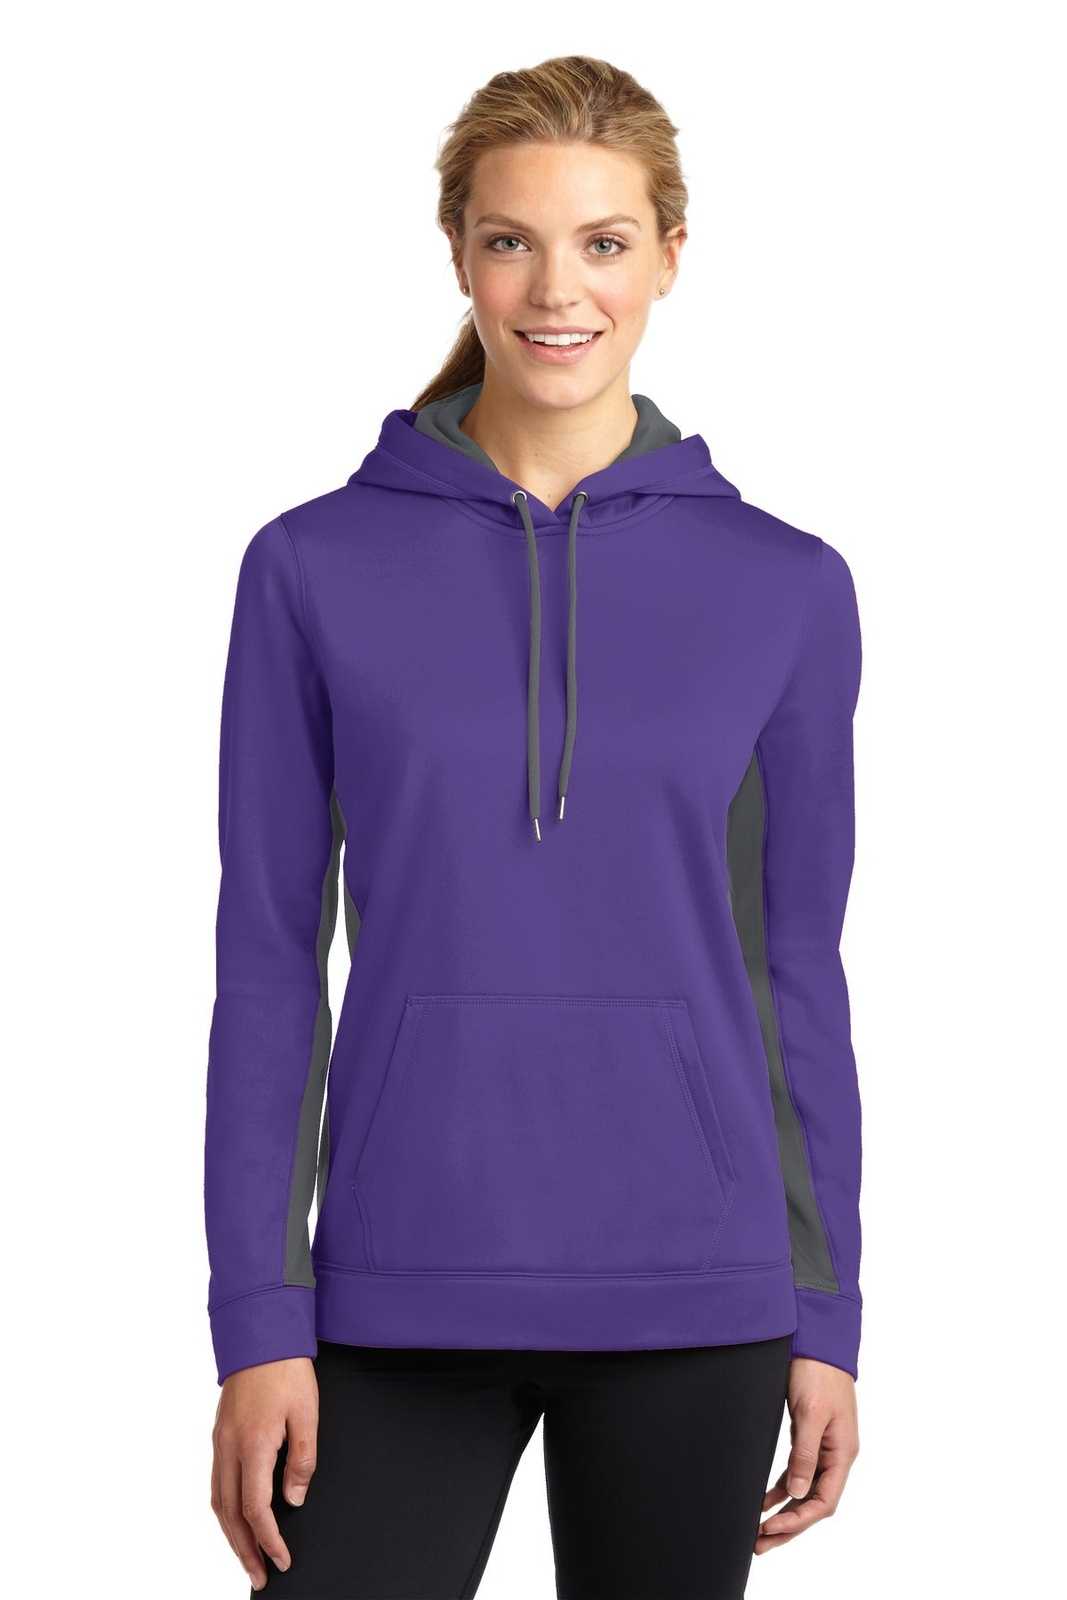 Sport-Tek LST235 Ladies Sport-Wick Fleece Colorblock Hooded Pullover - Purple Dark Smoke Gray - HIT a Double - 1